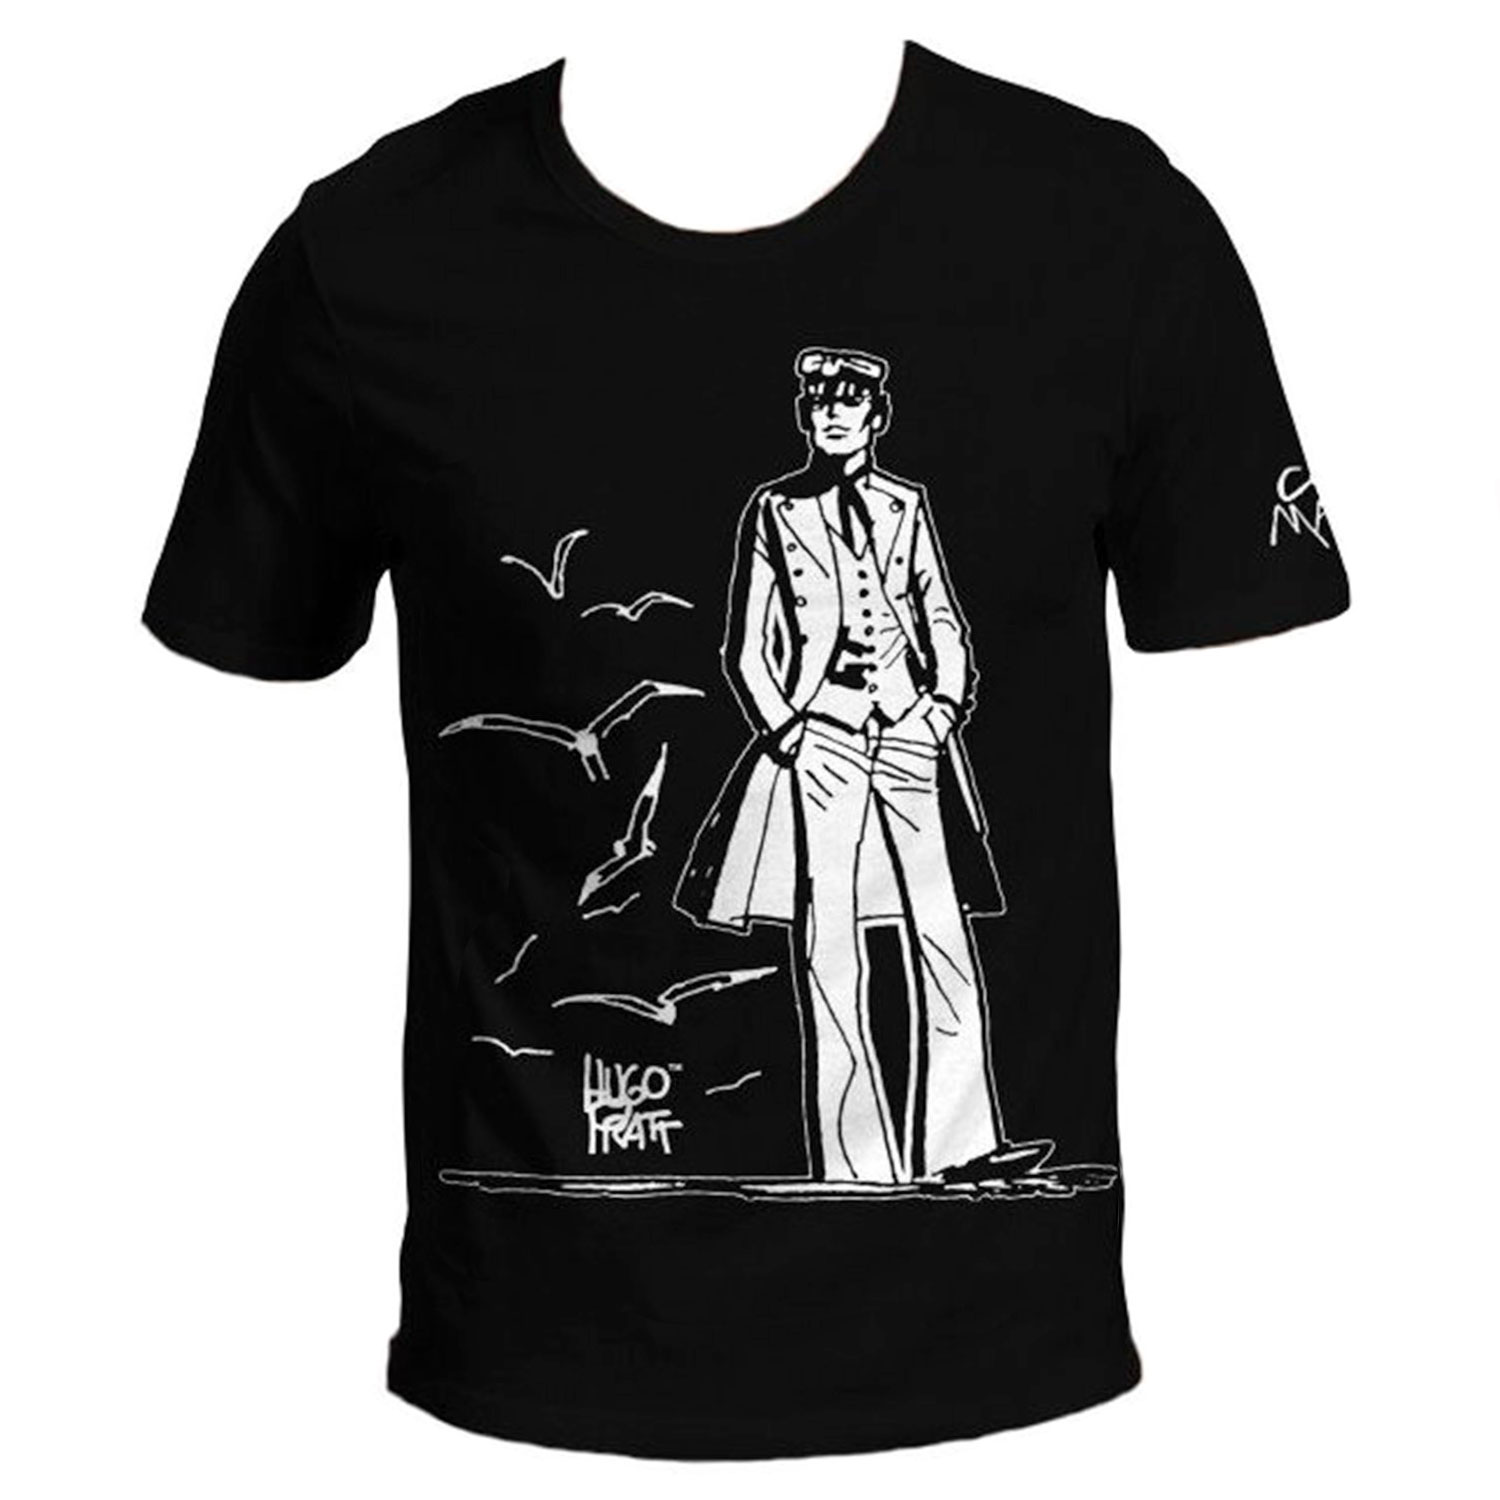 T-shirt Hugo Pratt : Corto Maltese , 40 anni ! - Nero - Taglia S